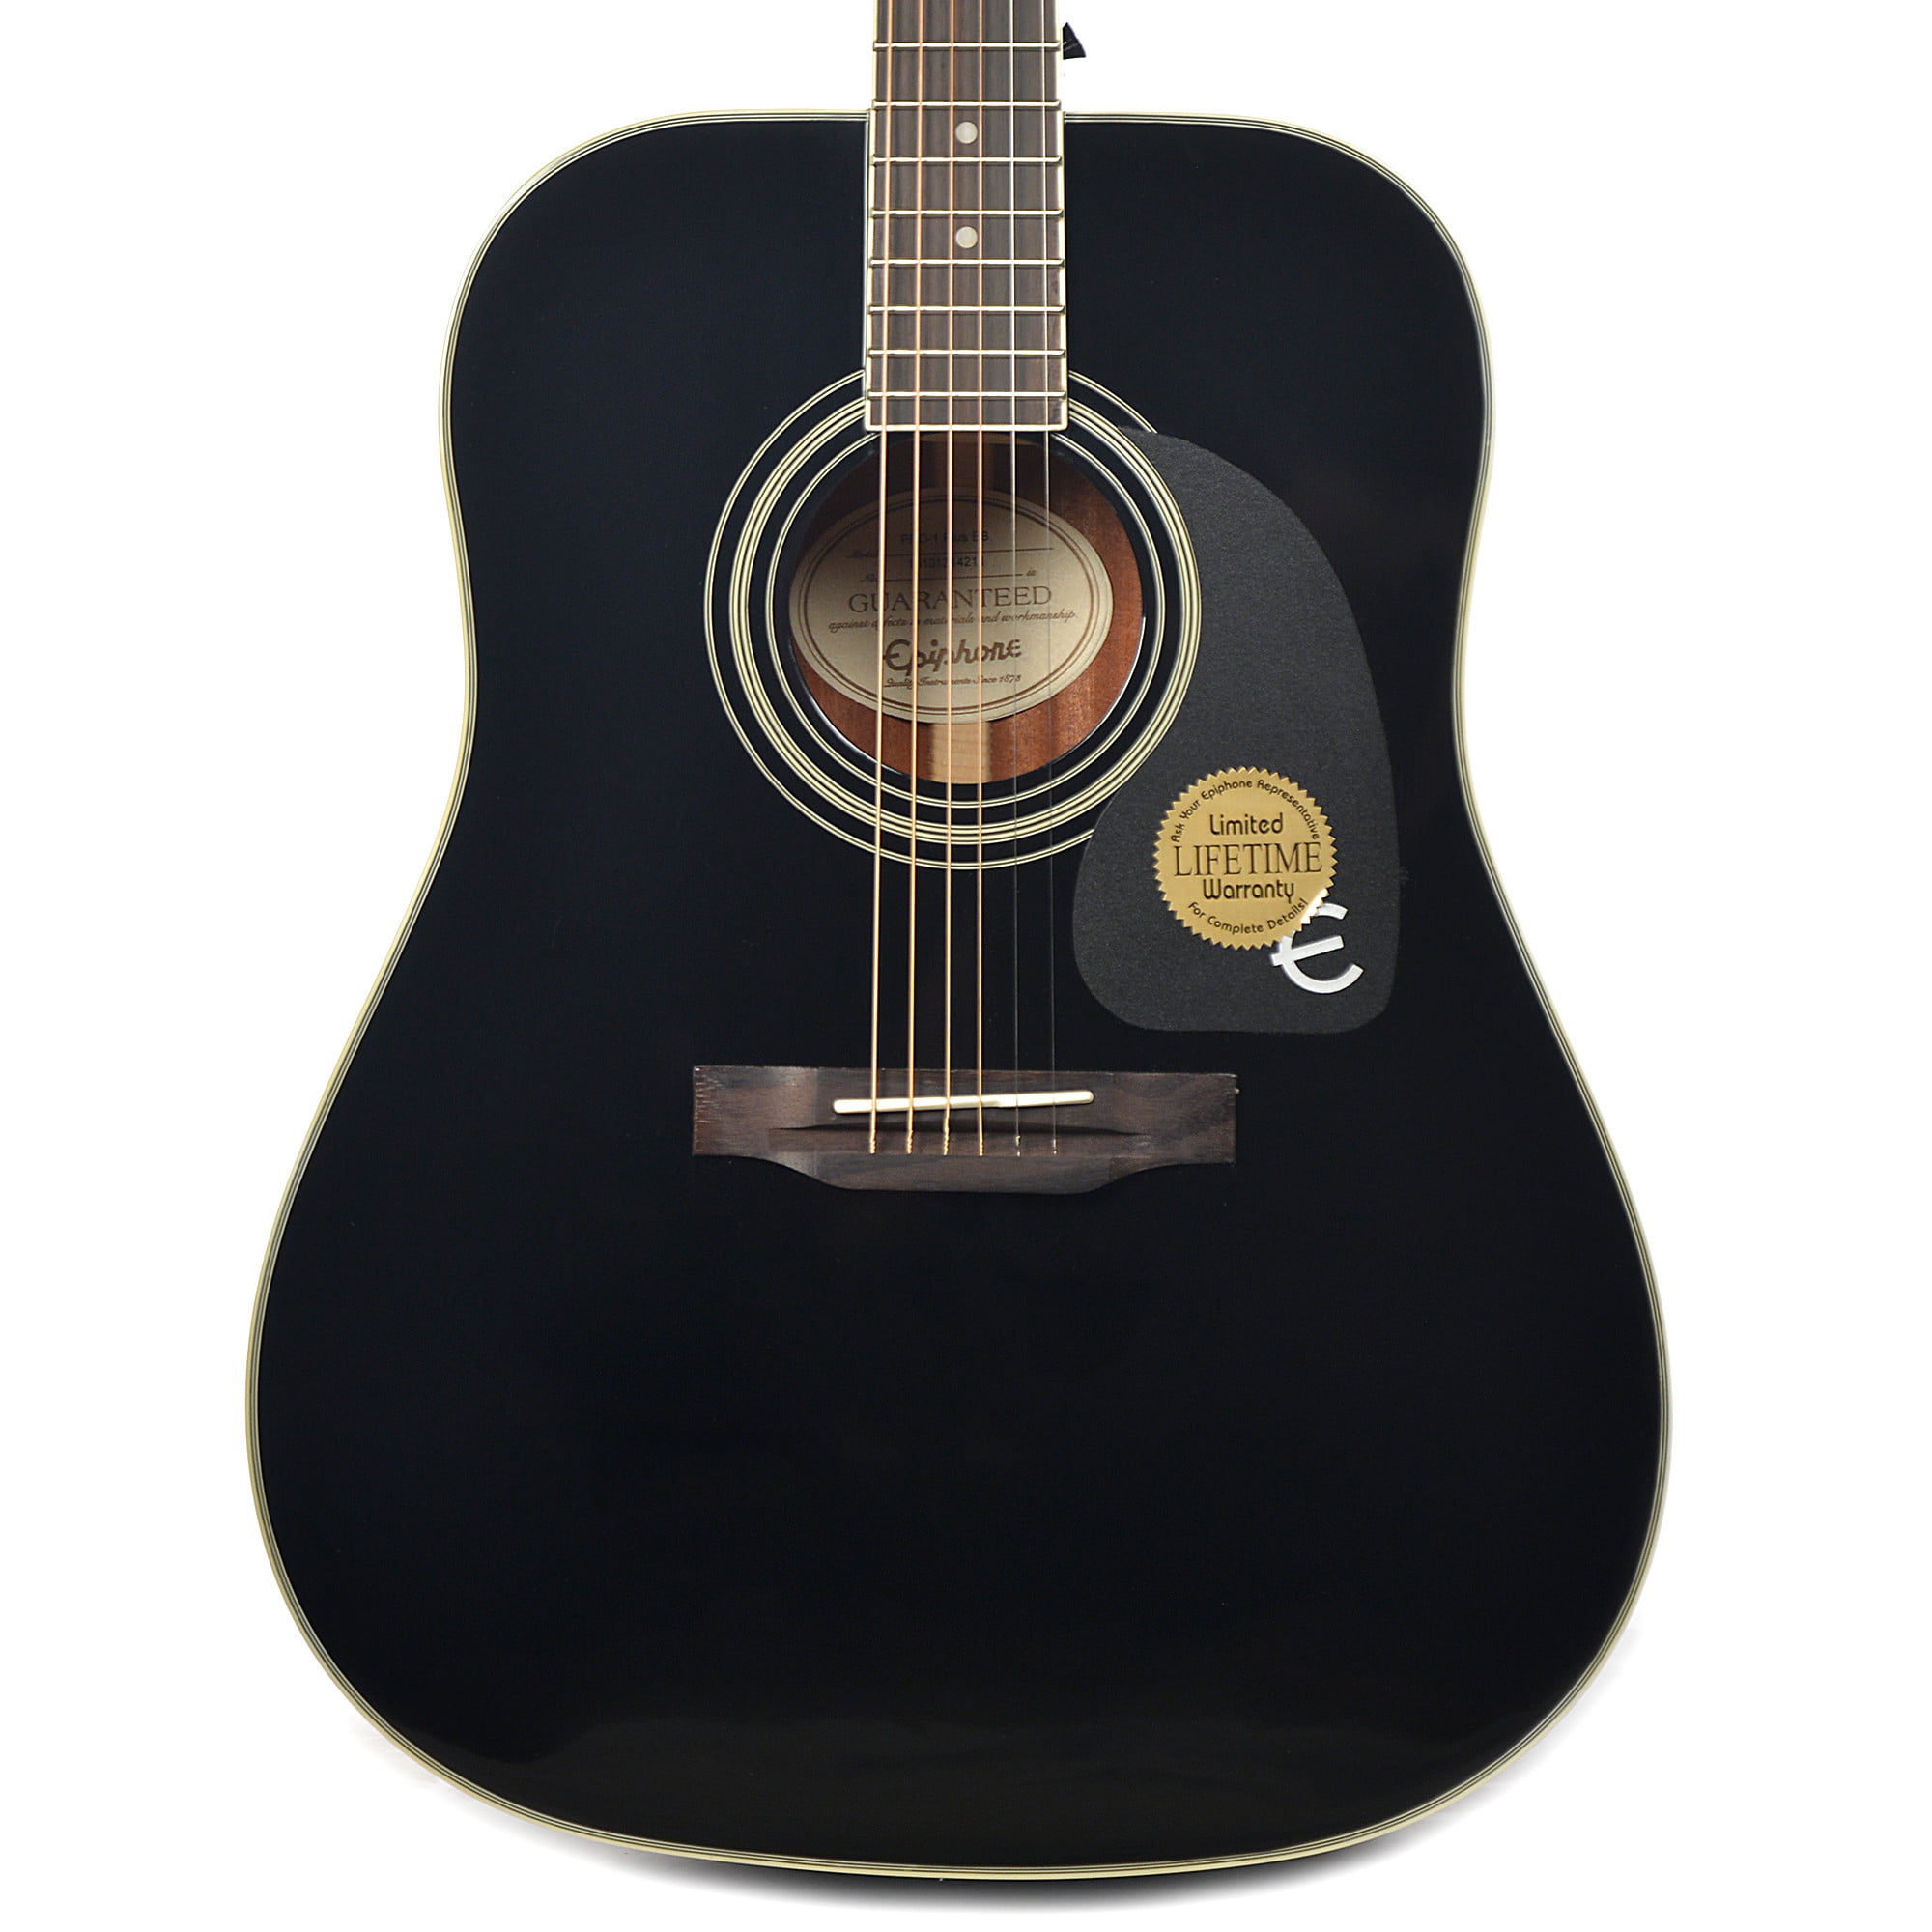  Epiphone PRO 1  Plus Acoustic Guitar Walmart com 